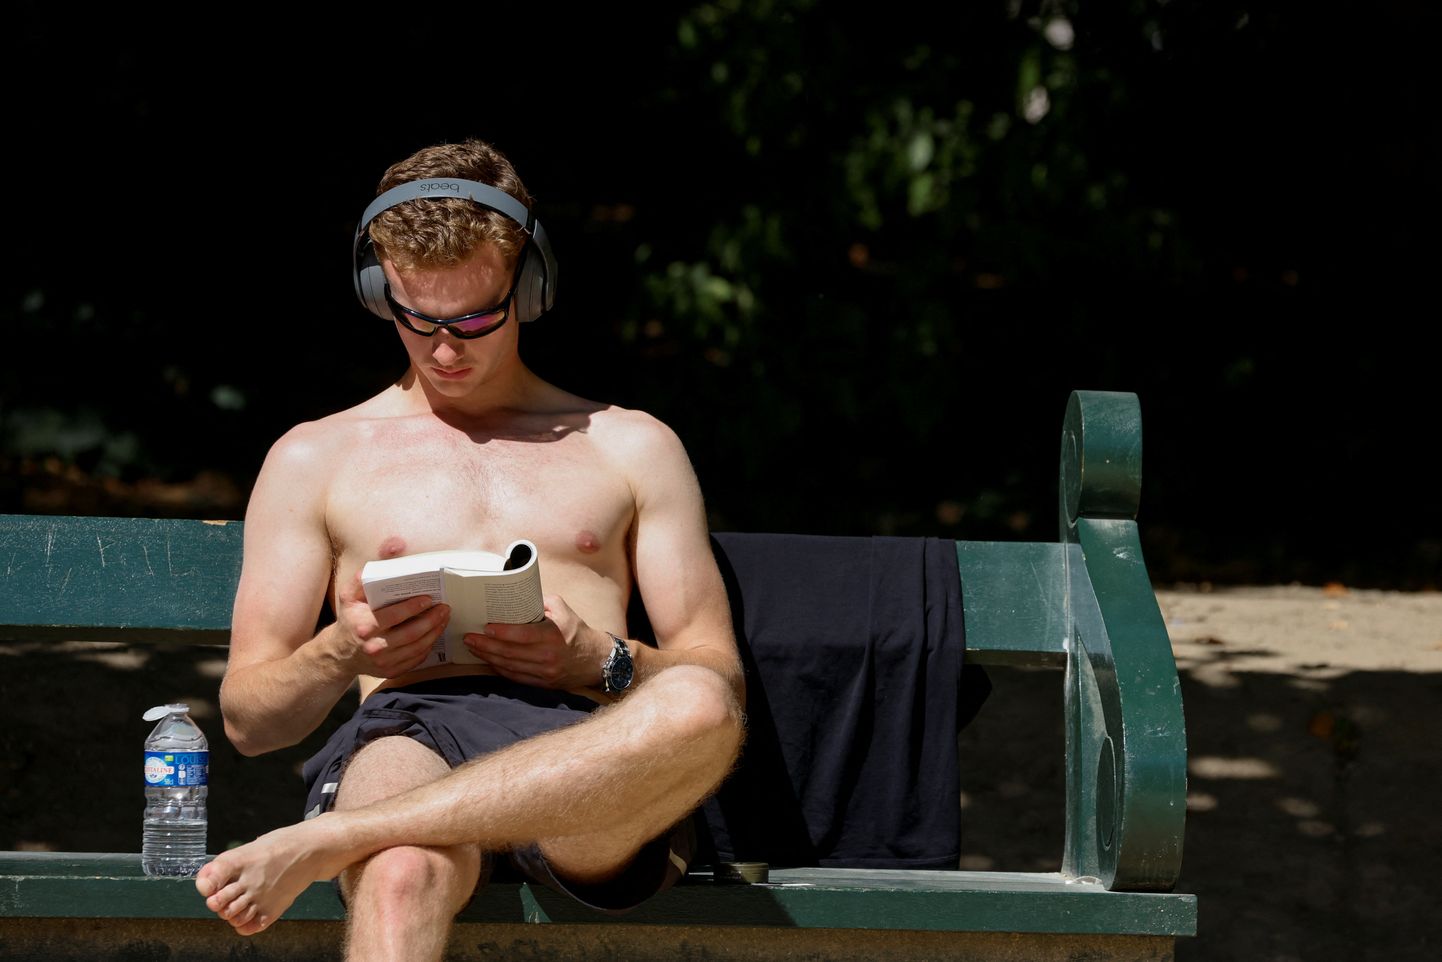 Mees kuumalaine ajal raamatut lugemas. Brüssel.